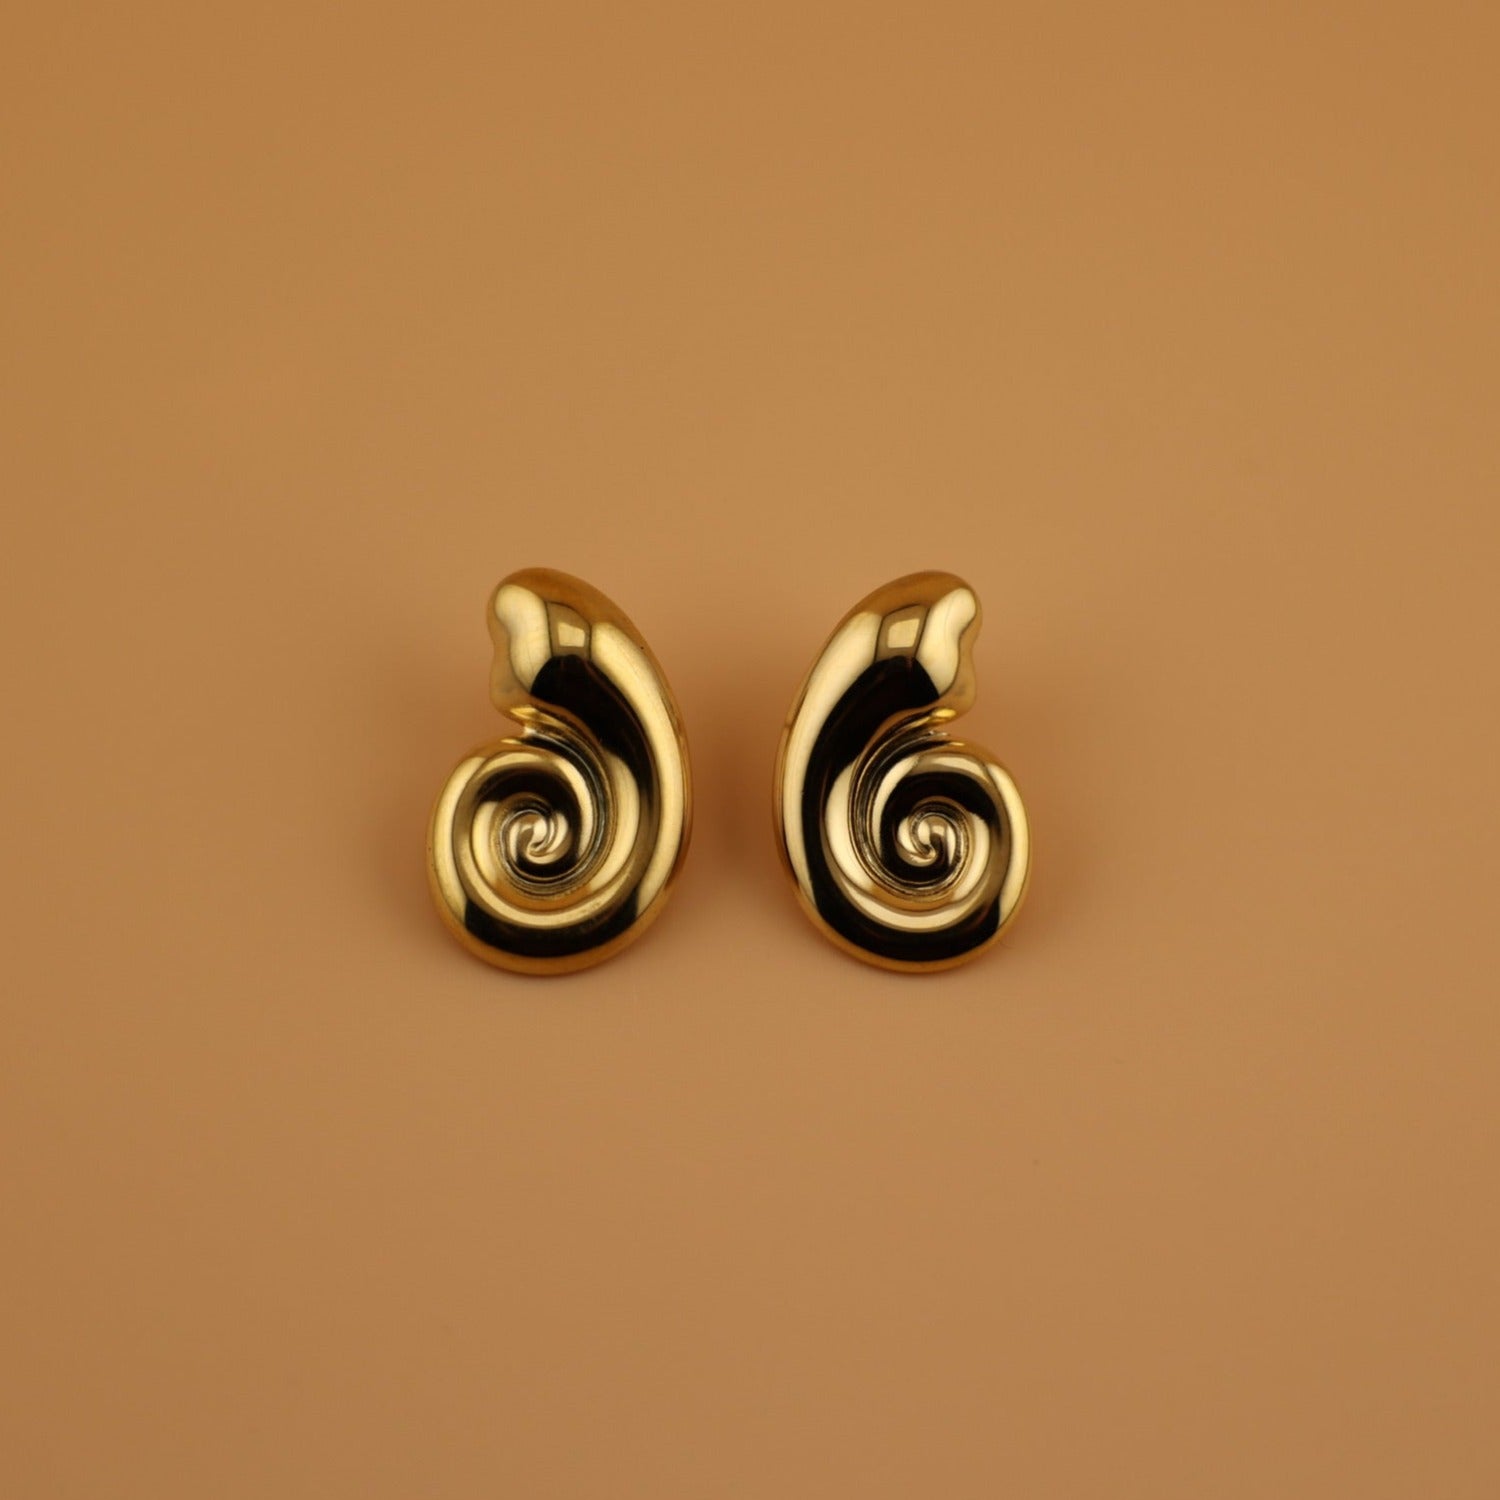 swirl earrings, gold earrings, statement earrings